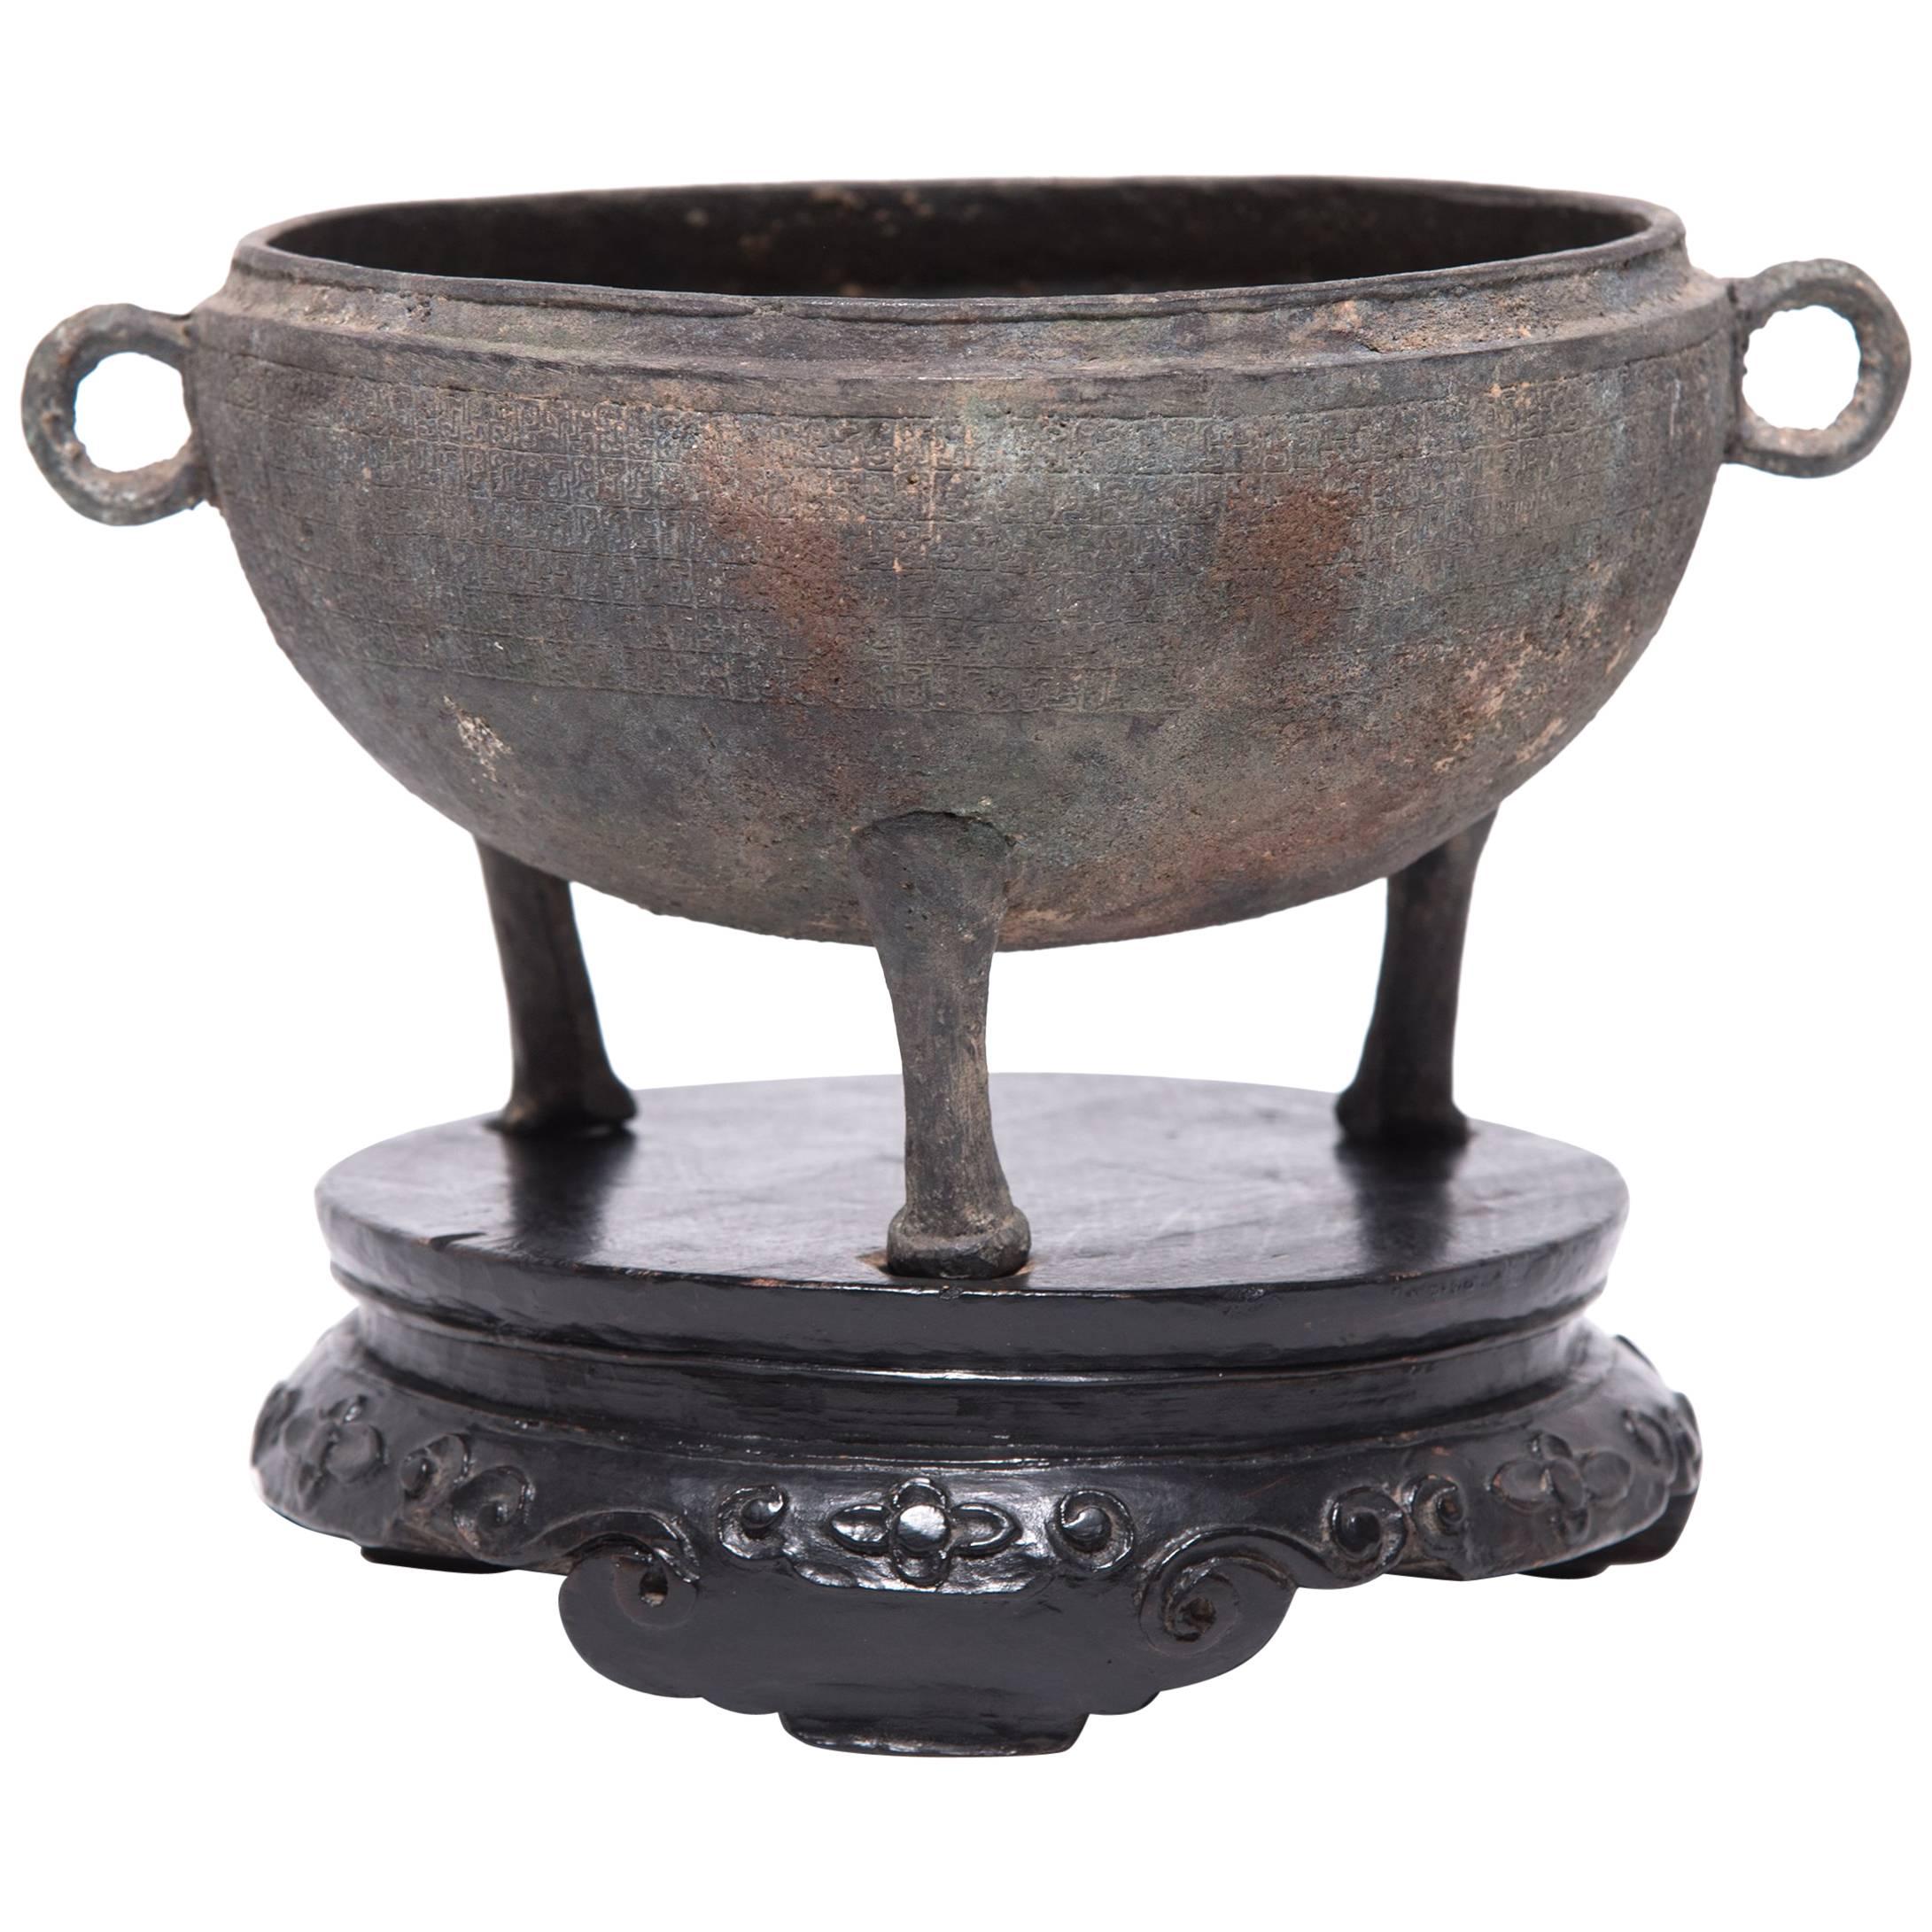 Vase chinois en bronze avec pieds tripodes, vers 1750